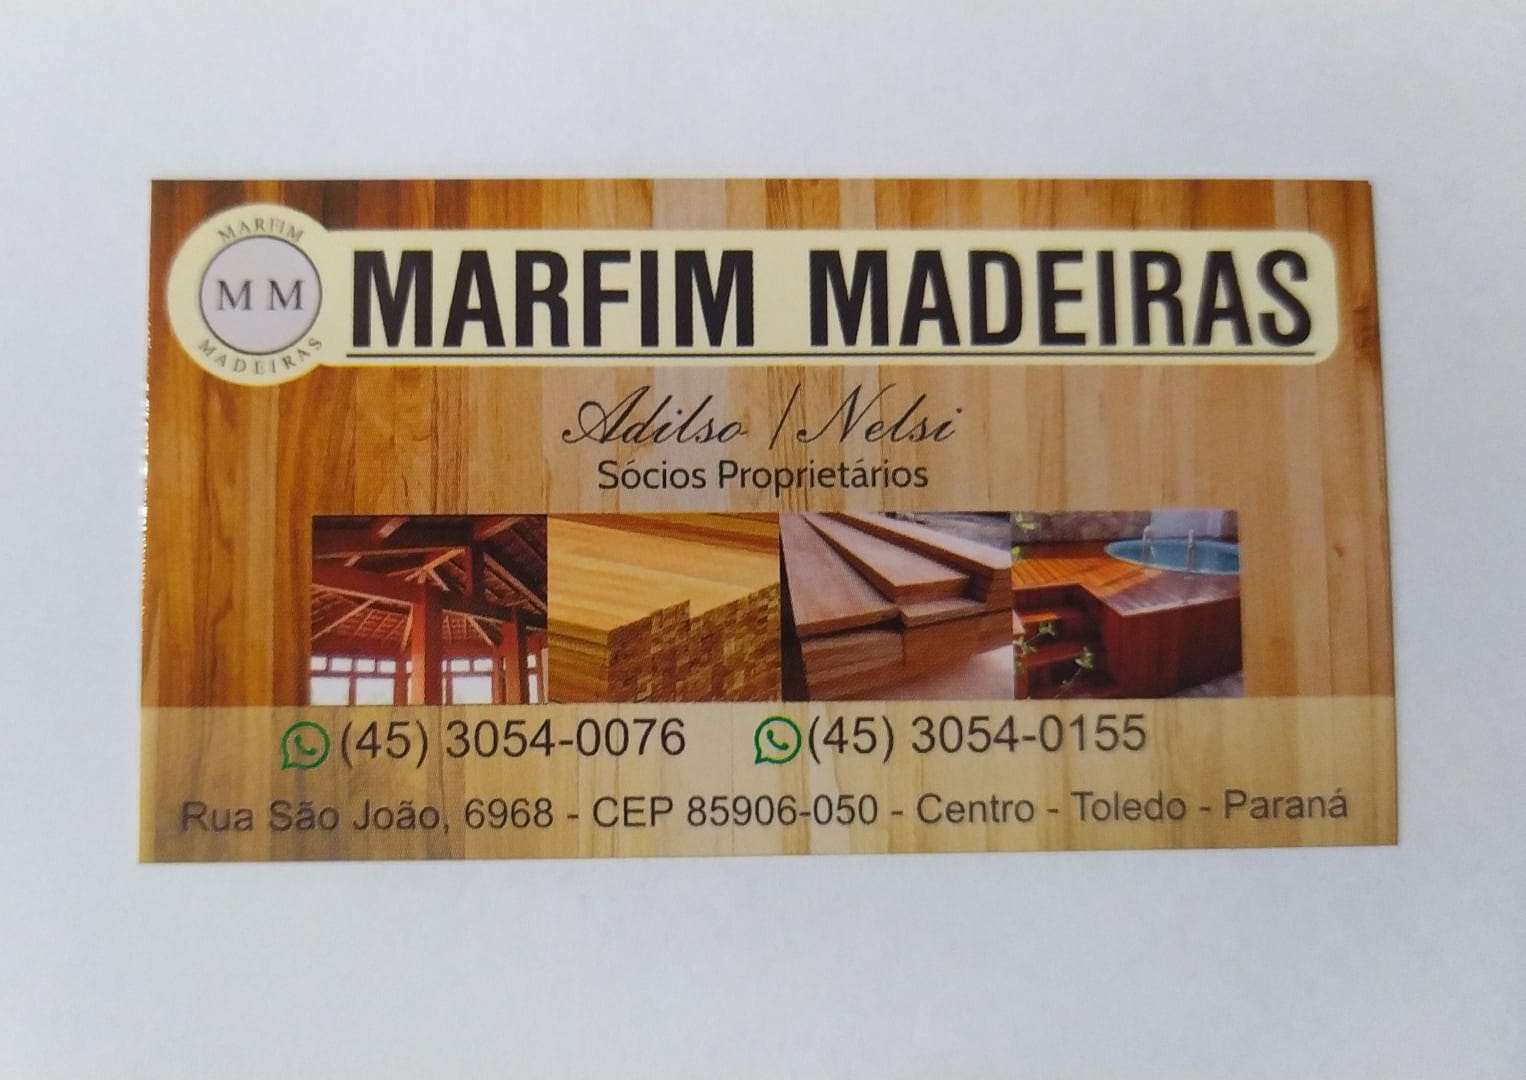 MARFIM MADEIRAS